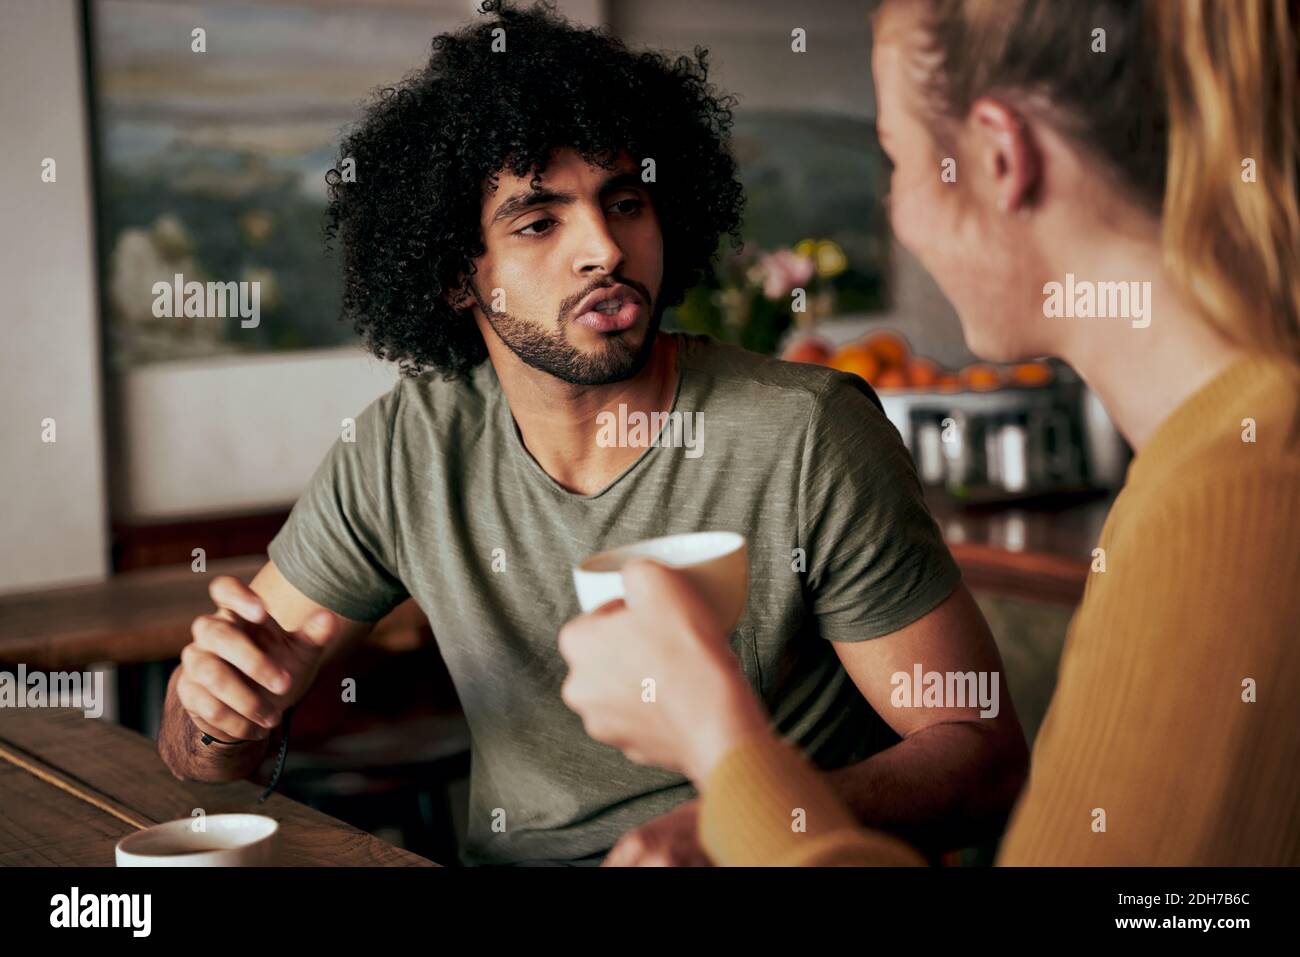 Joven afroamericano con un afro en una conversación seria con la mujer mientras estaba sentado en un café y bebiendo café - dos amigos diversos charlando Foto de stock